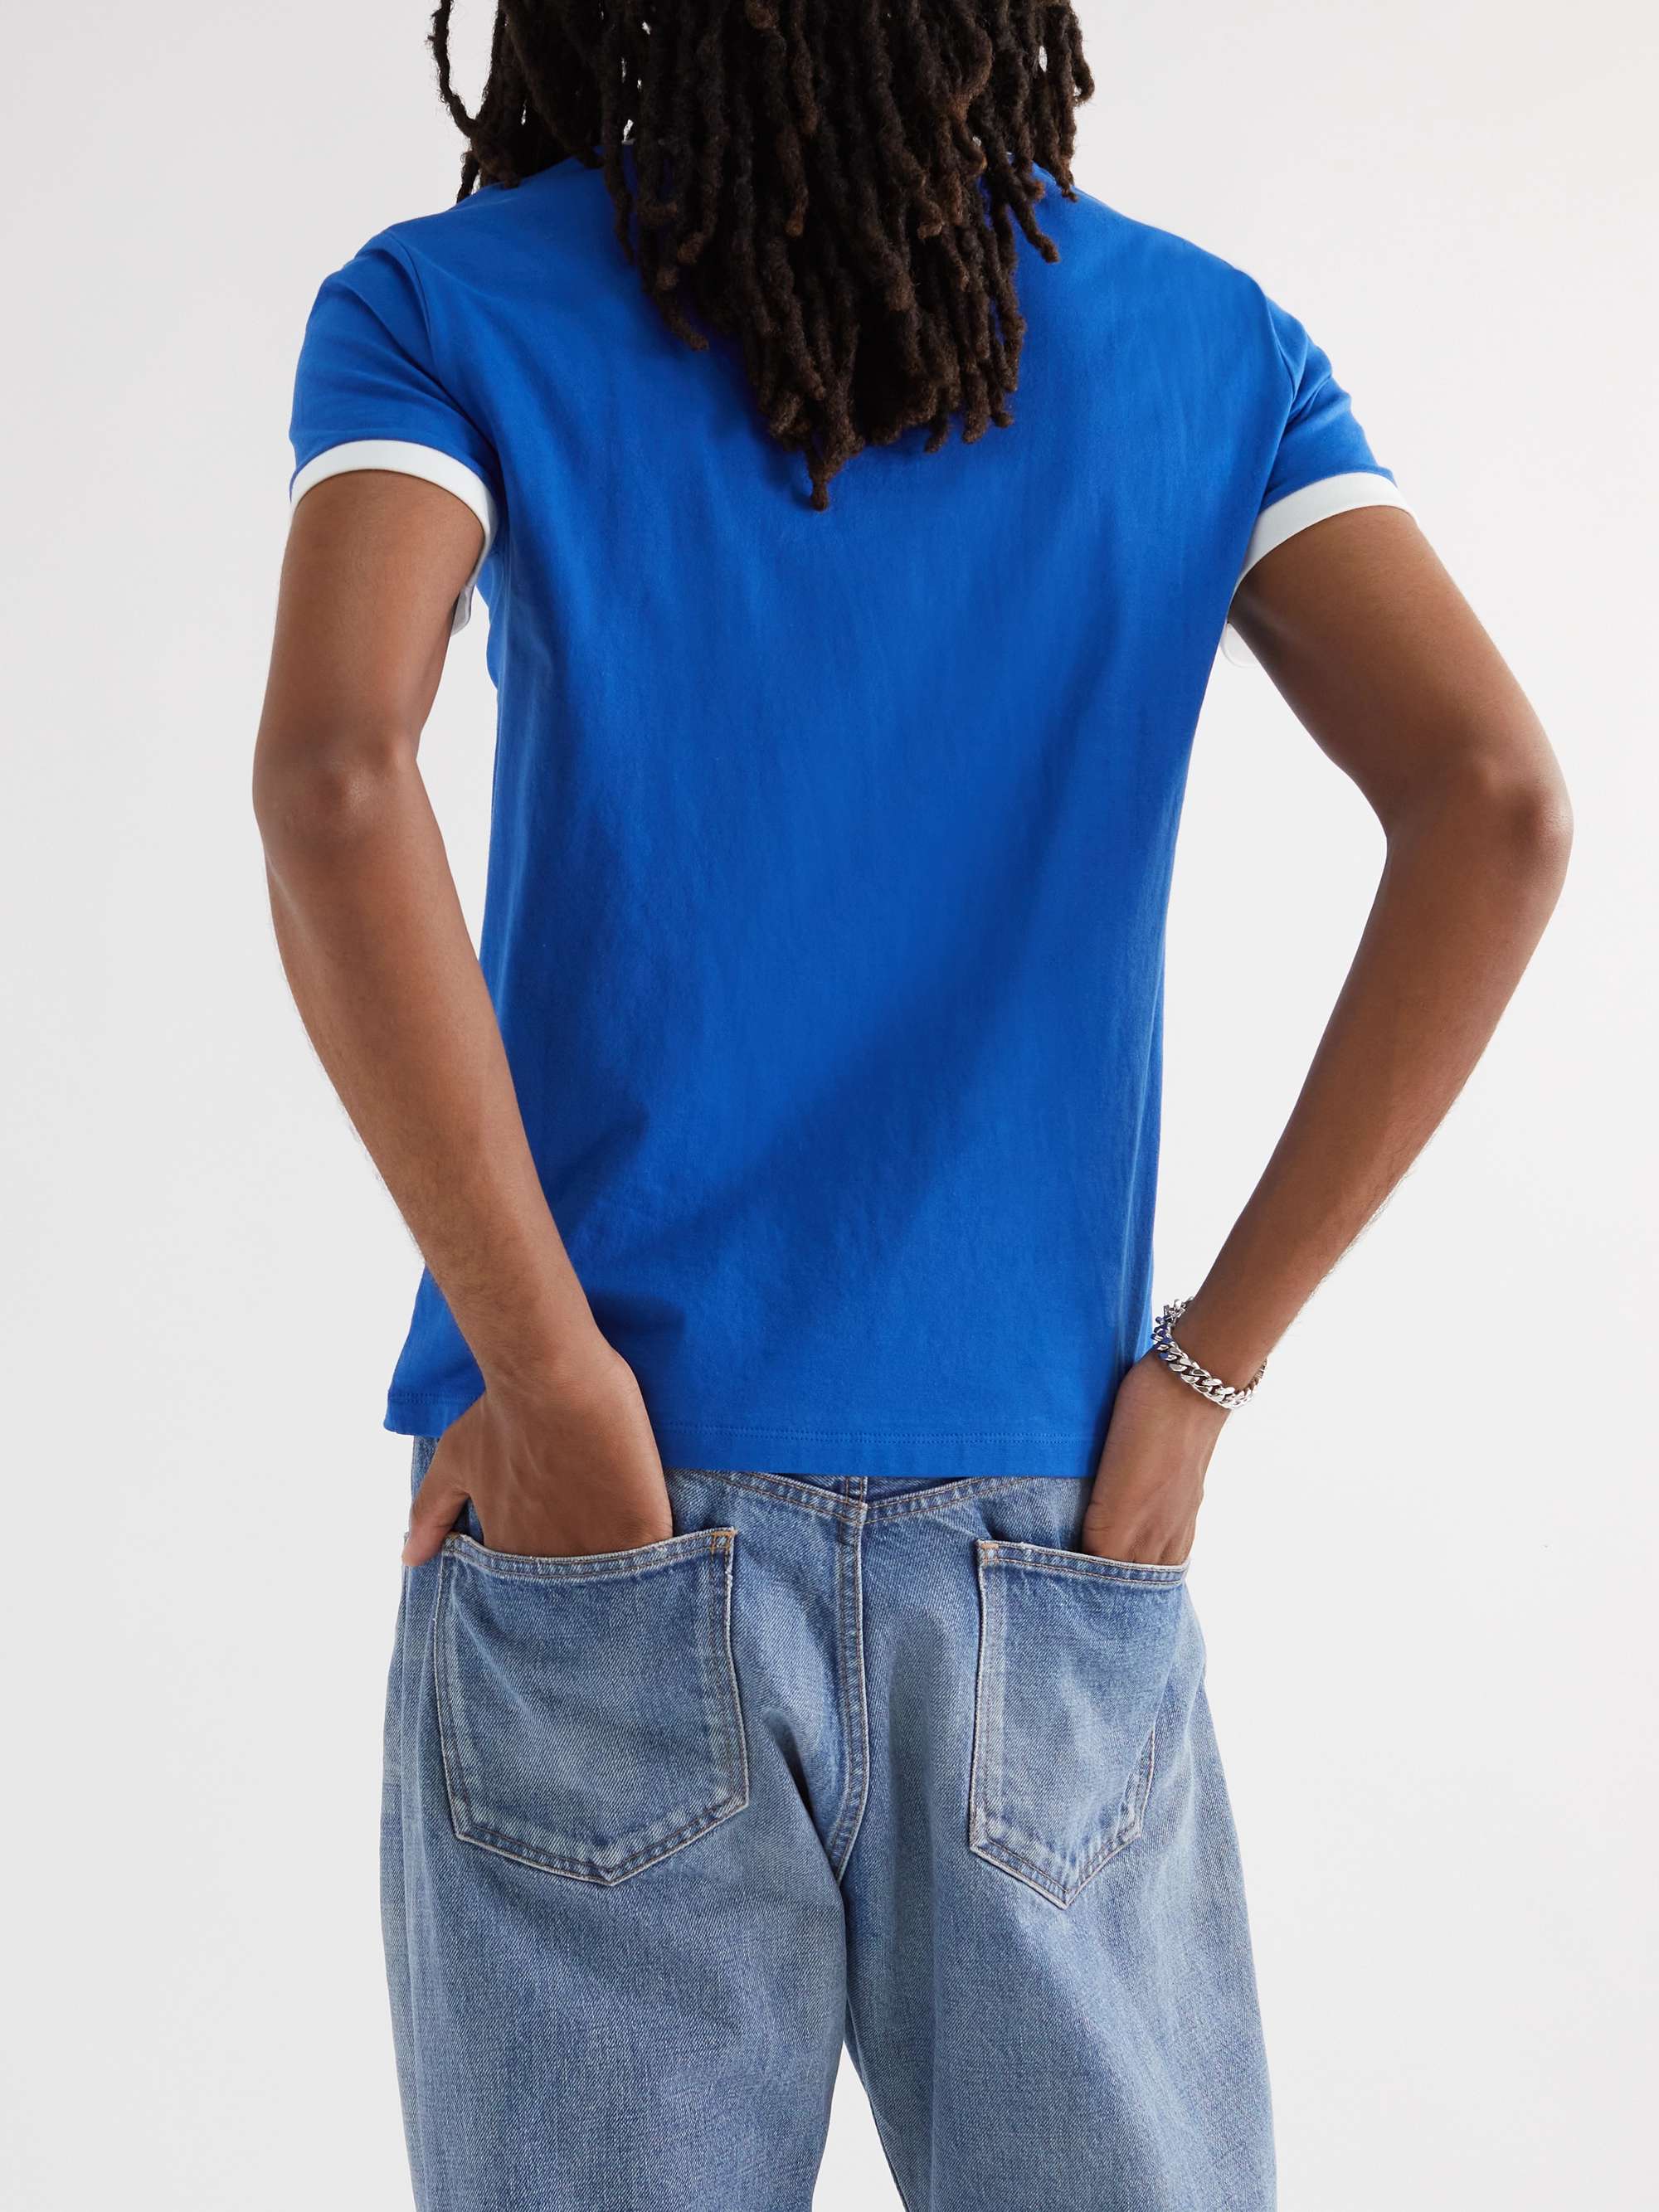 CELINE HOMME Slim-Fit Logo-Print Cotton-Jersey T-Shirt